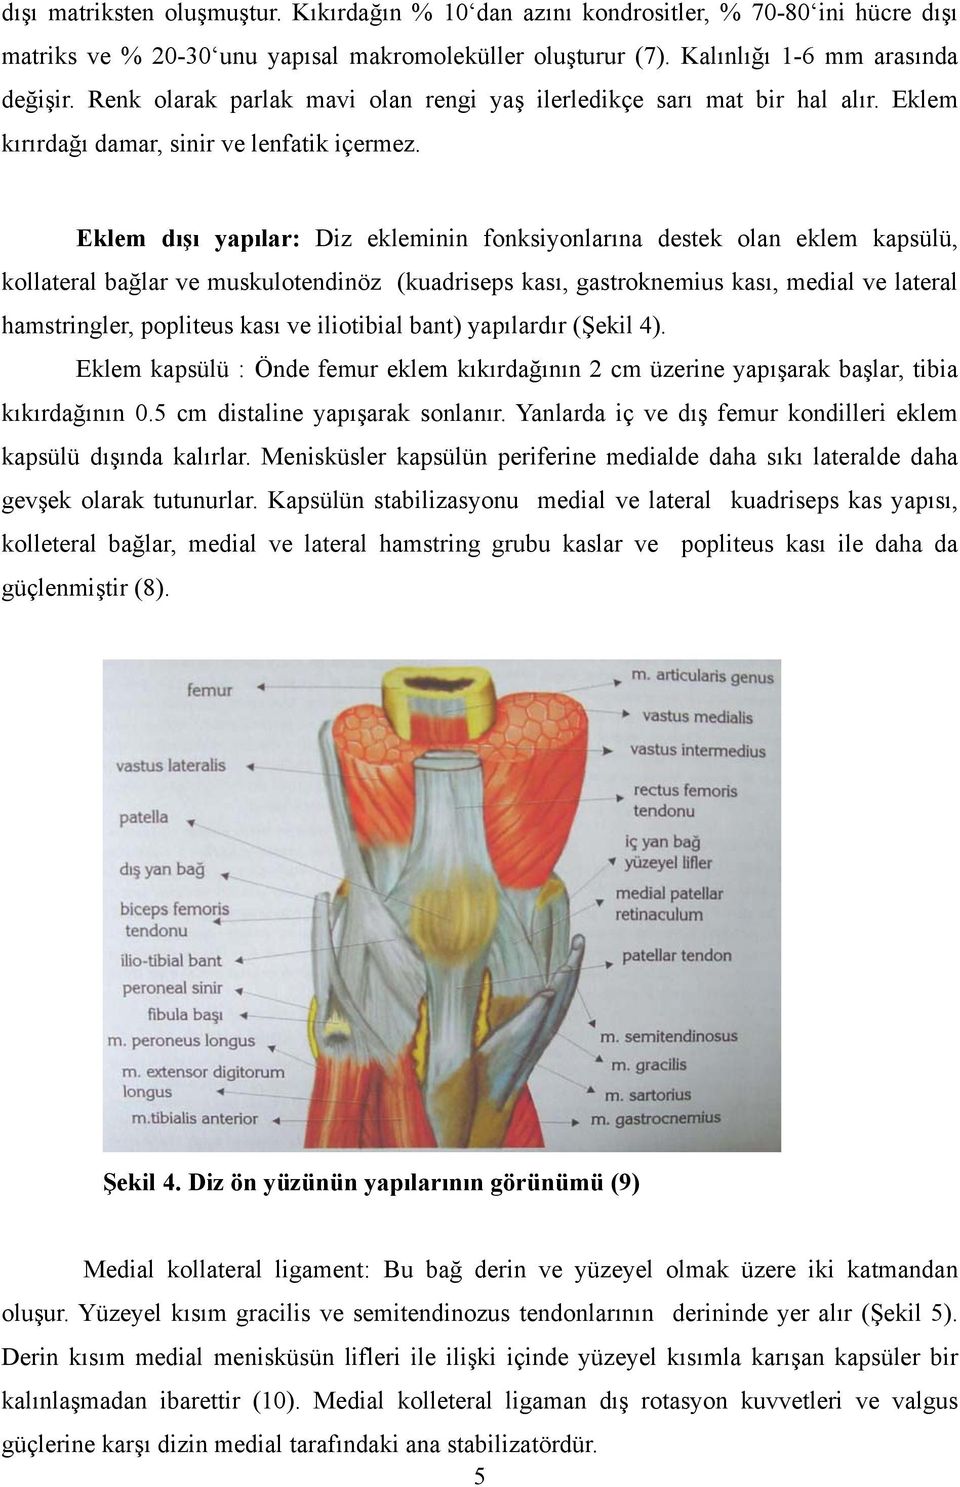 Eklem dışı yapılar: Diz ekleminin fonksiyonlarına destek olan eklem kapsülü, kollateral bağlar ve muskulotendinöz (kuadriseps kası, gastroknemius kası, medial ve lateral hamstringler, popliteus kası